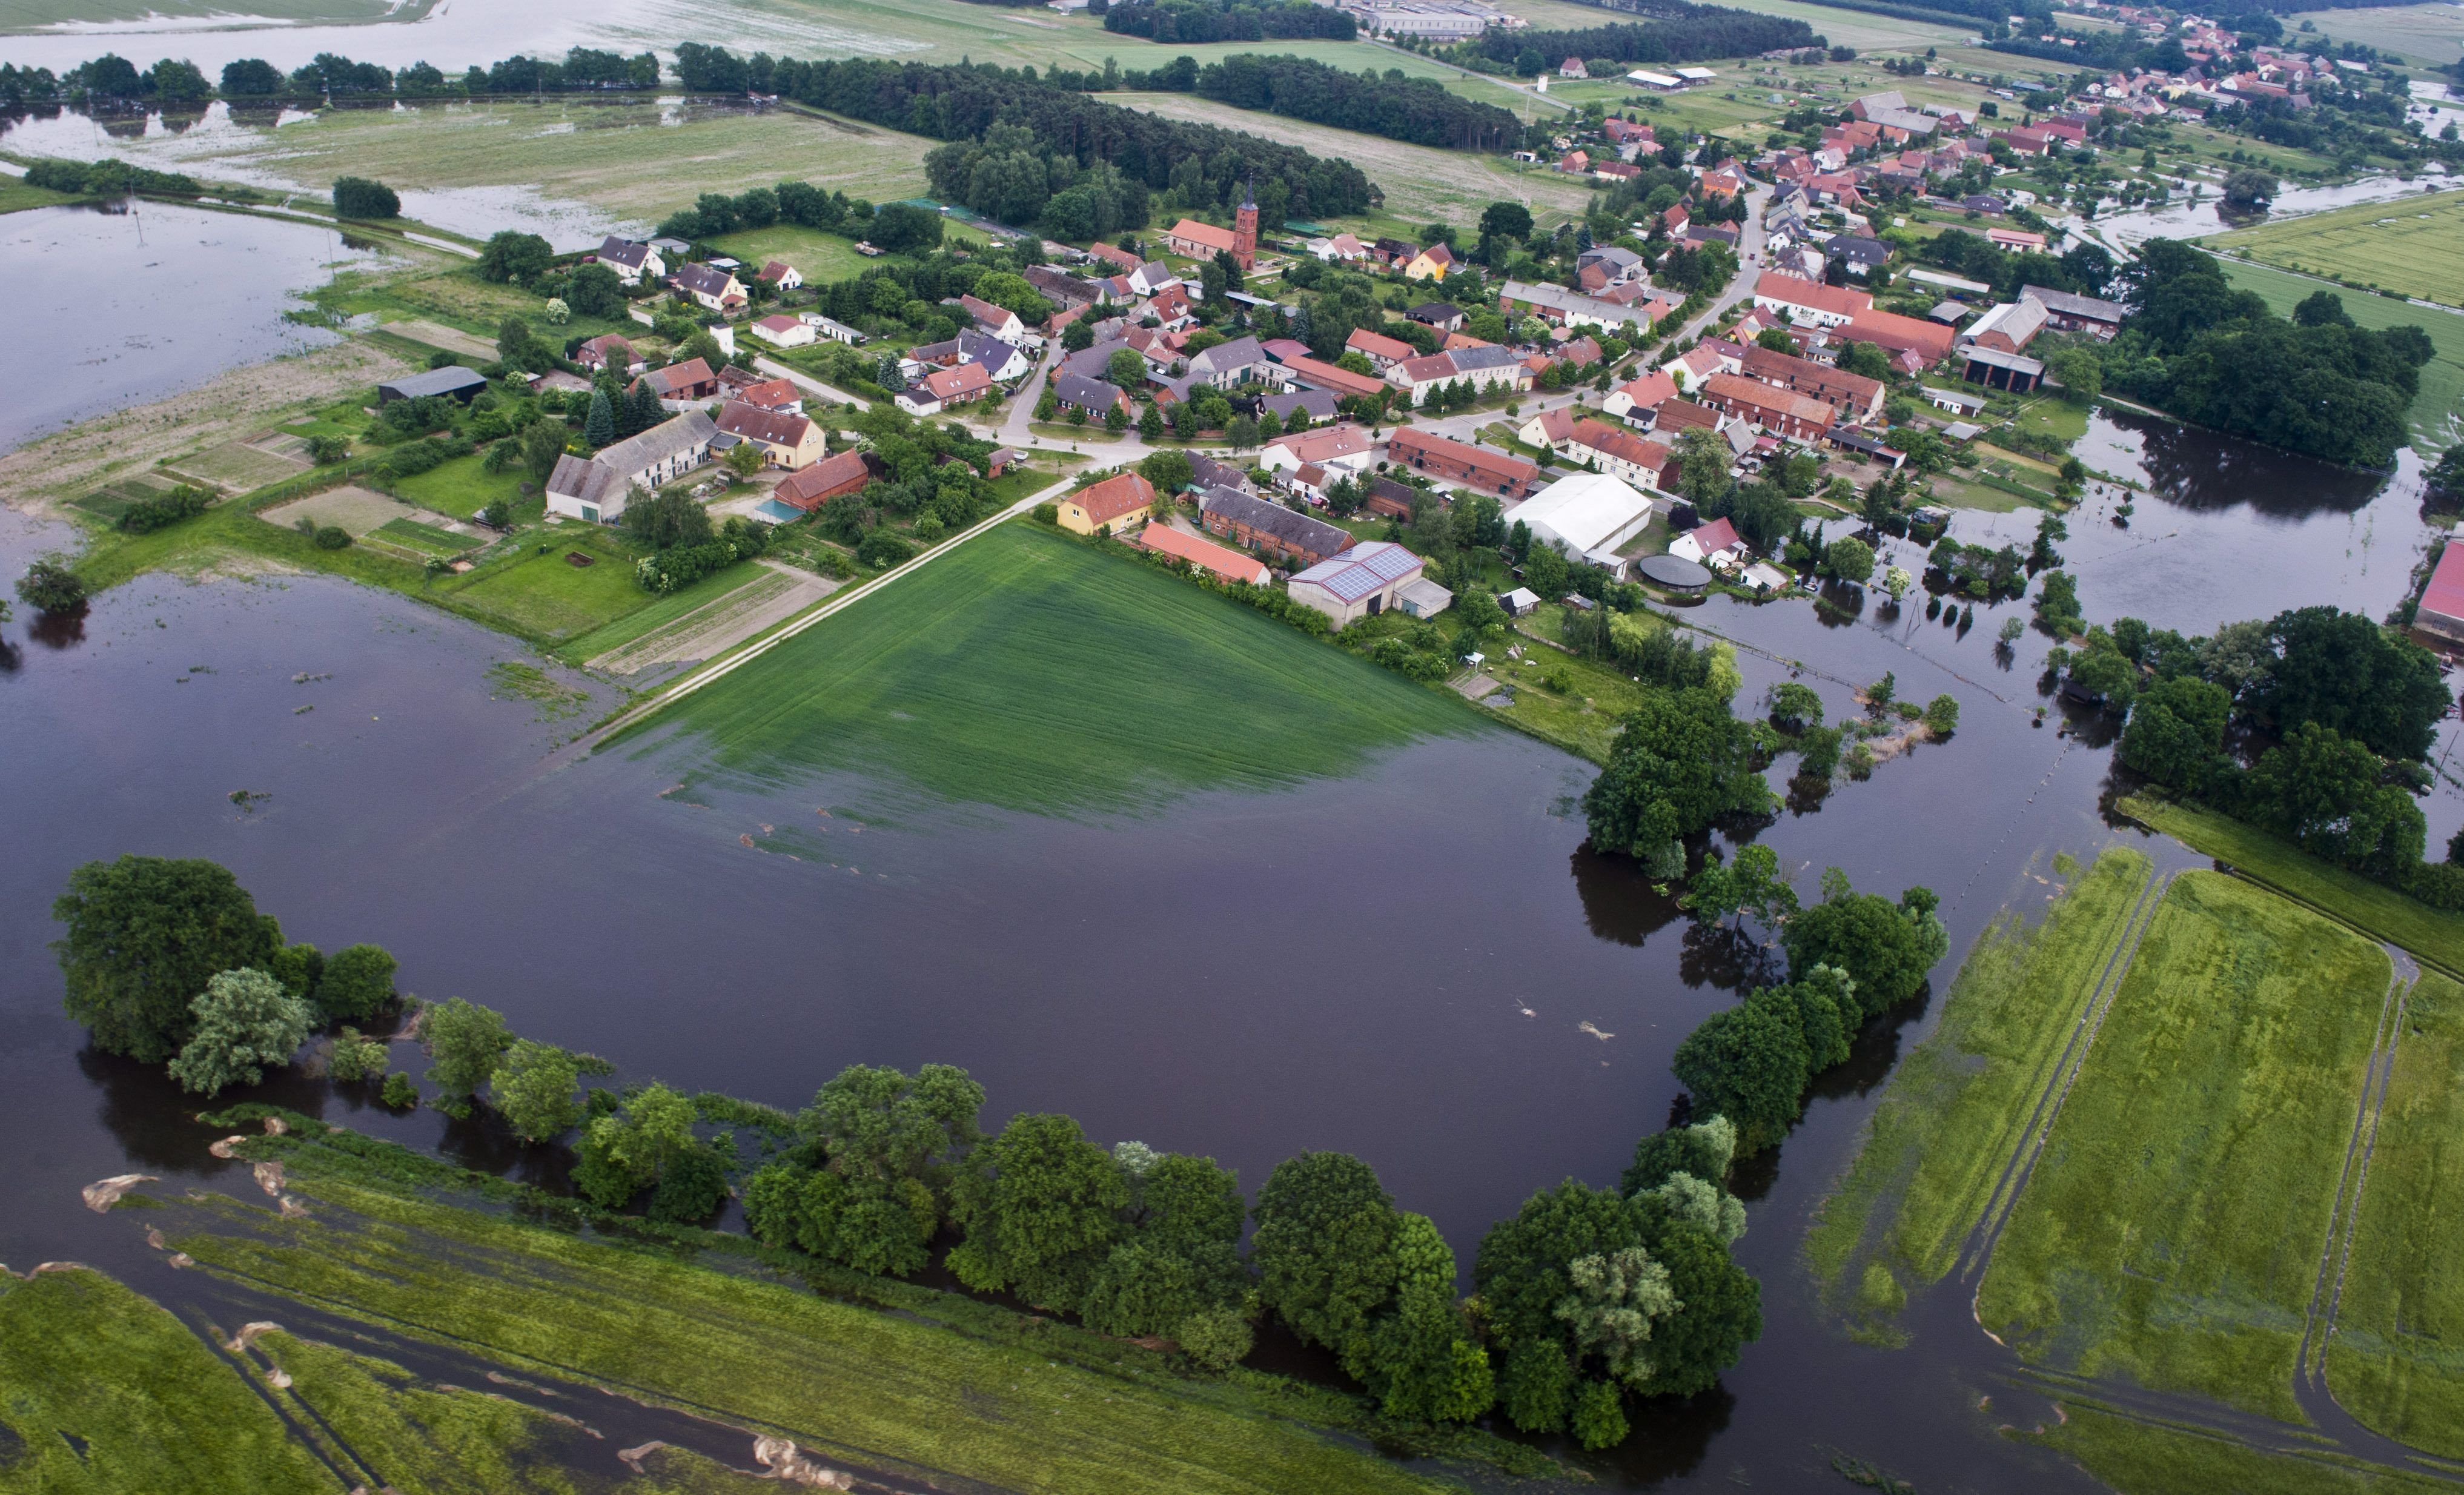 Retrocede el nivel de las aguas en la mayoría de las zonas anegadas de Alemania